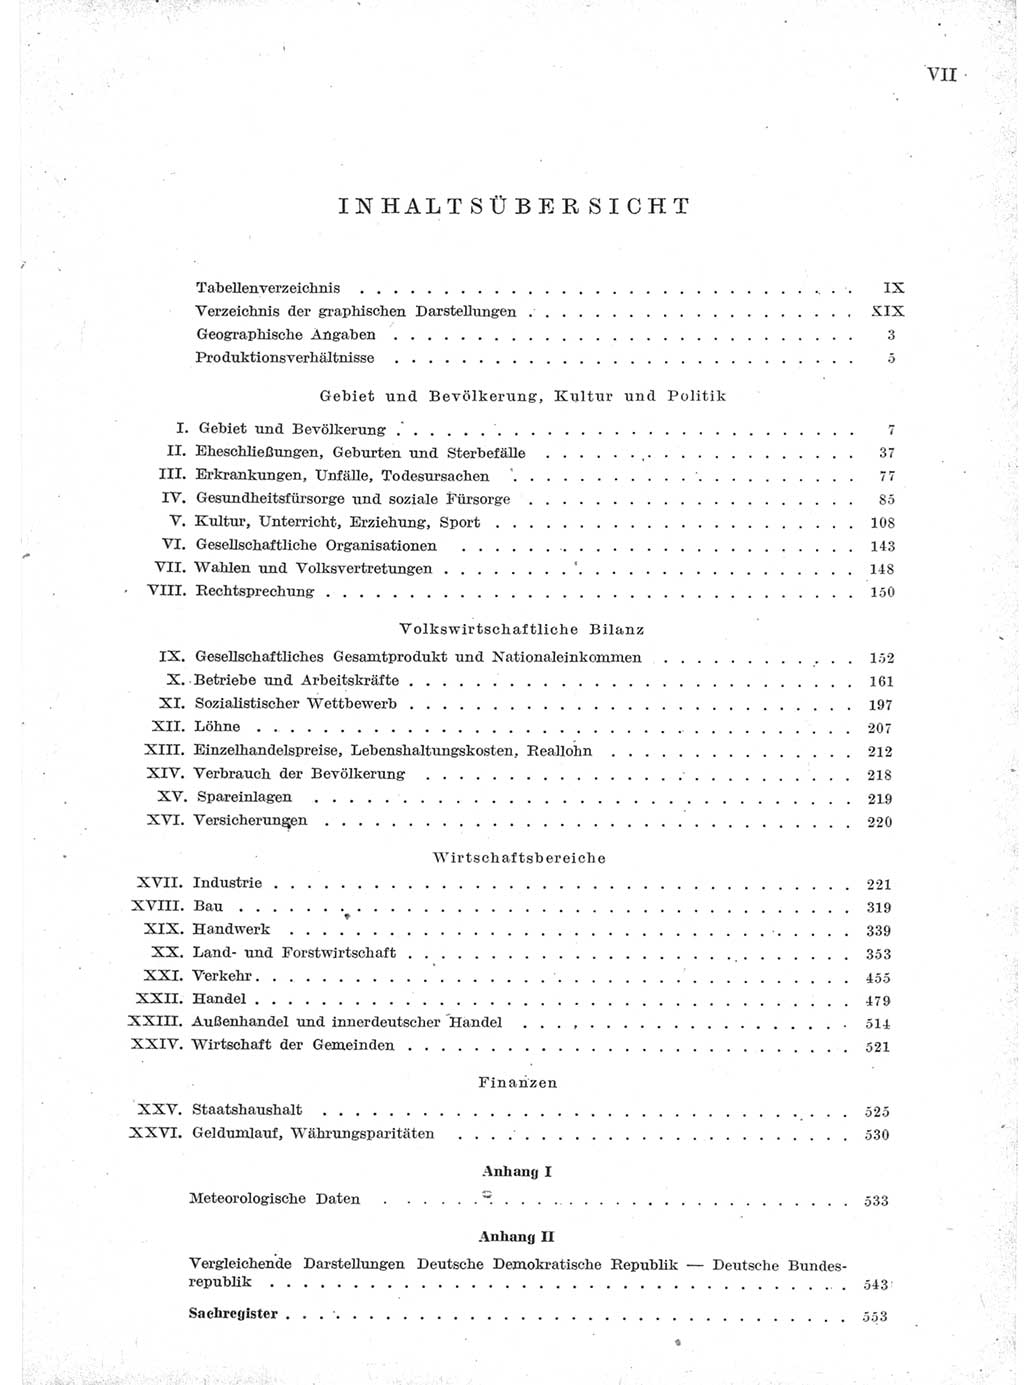 Statistisches Jahrbuch der Deutschen Demokratischen Republik (DDR) 1957, Seite 7 (Stat. Jb. DDR 1957, S. 7)